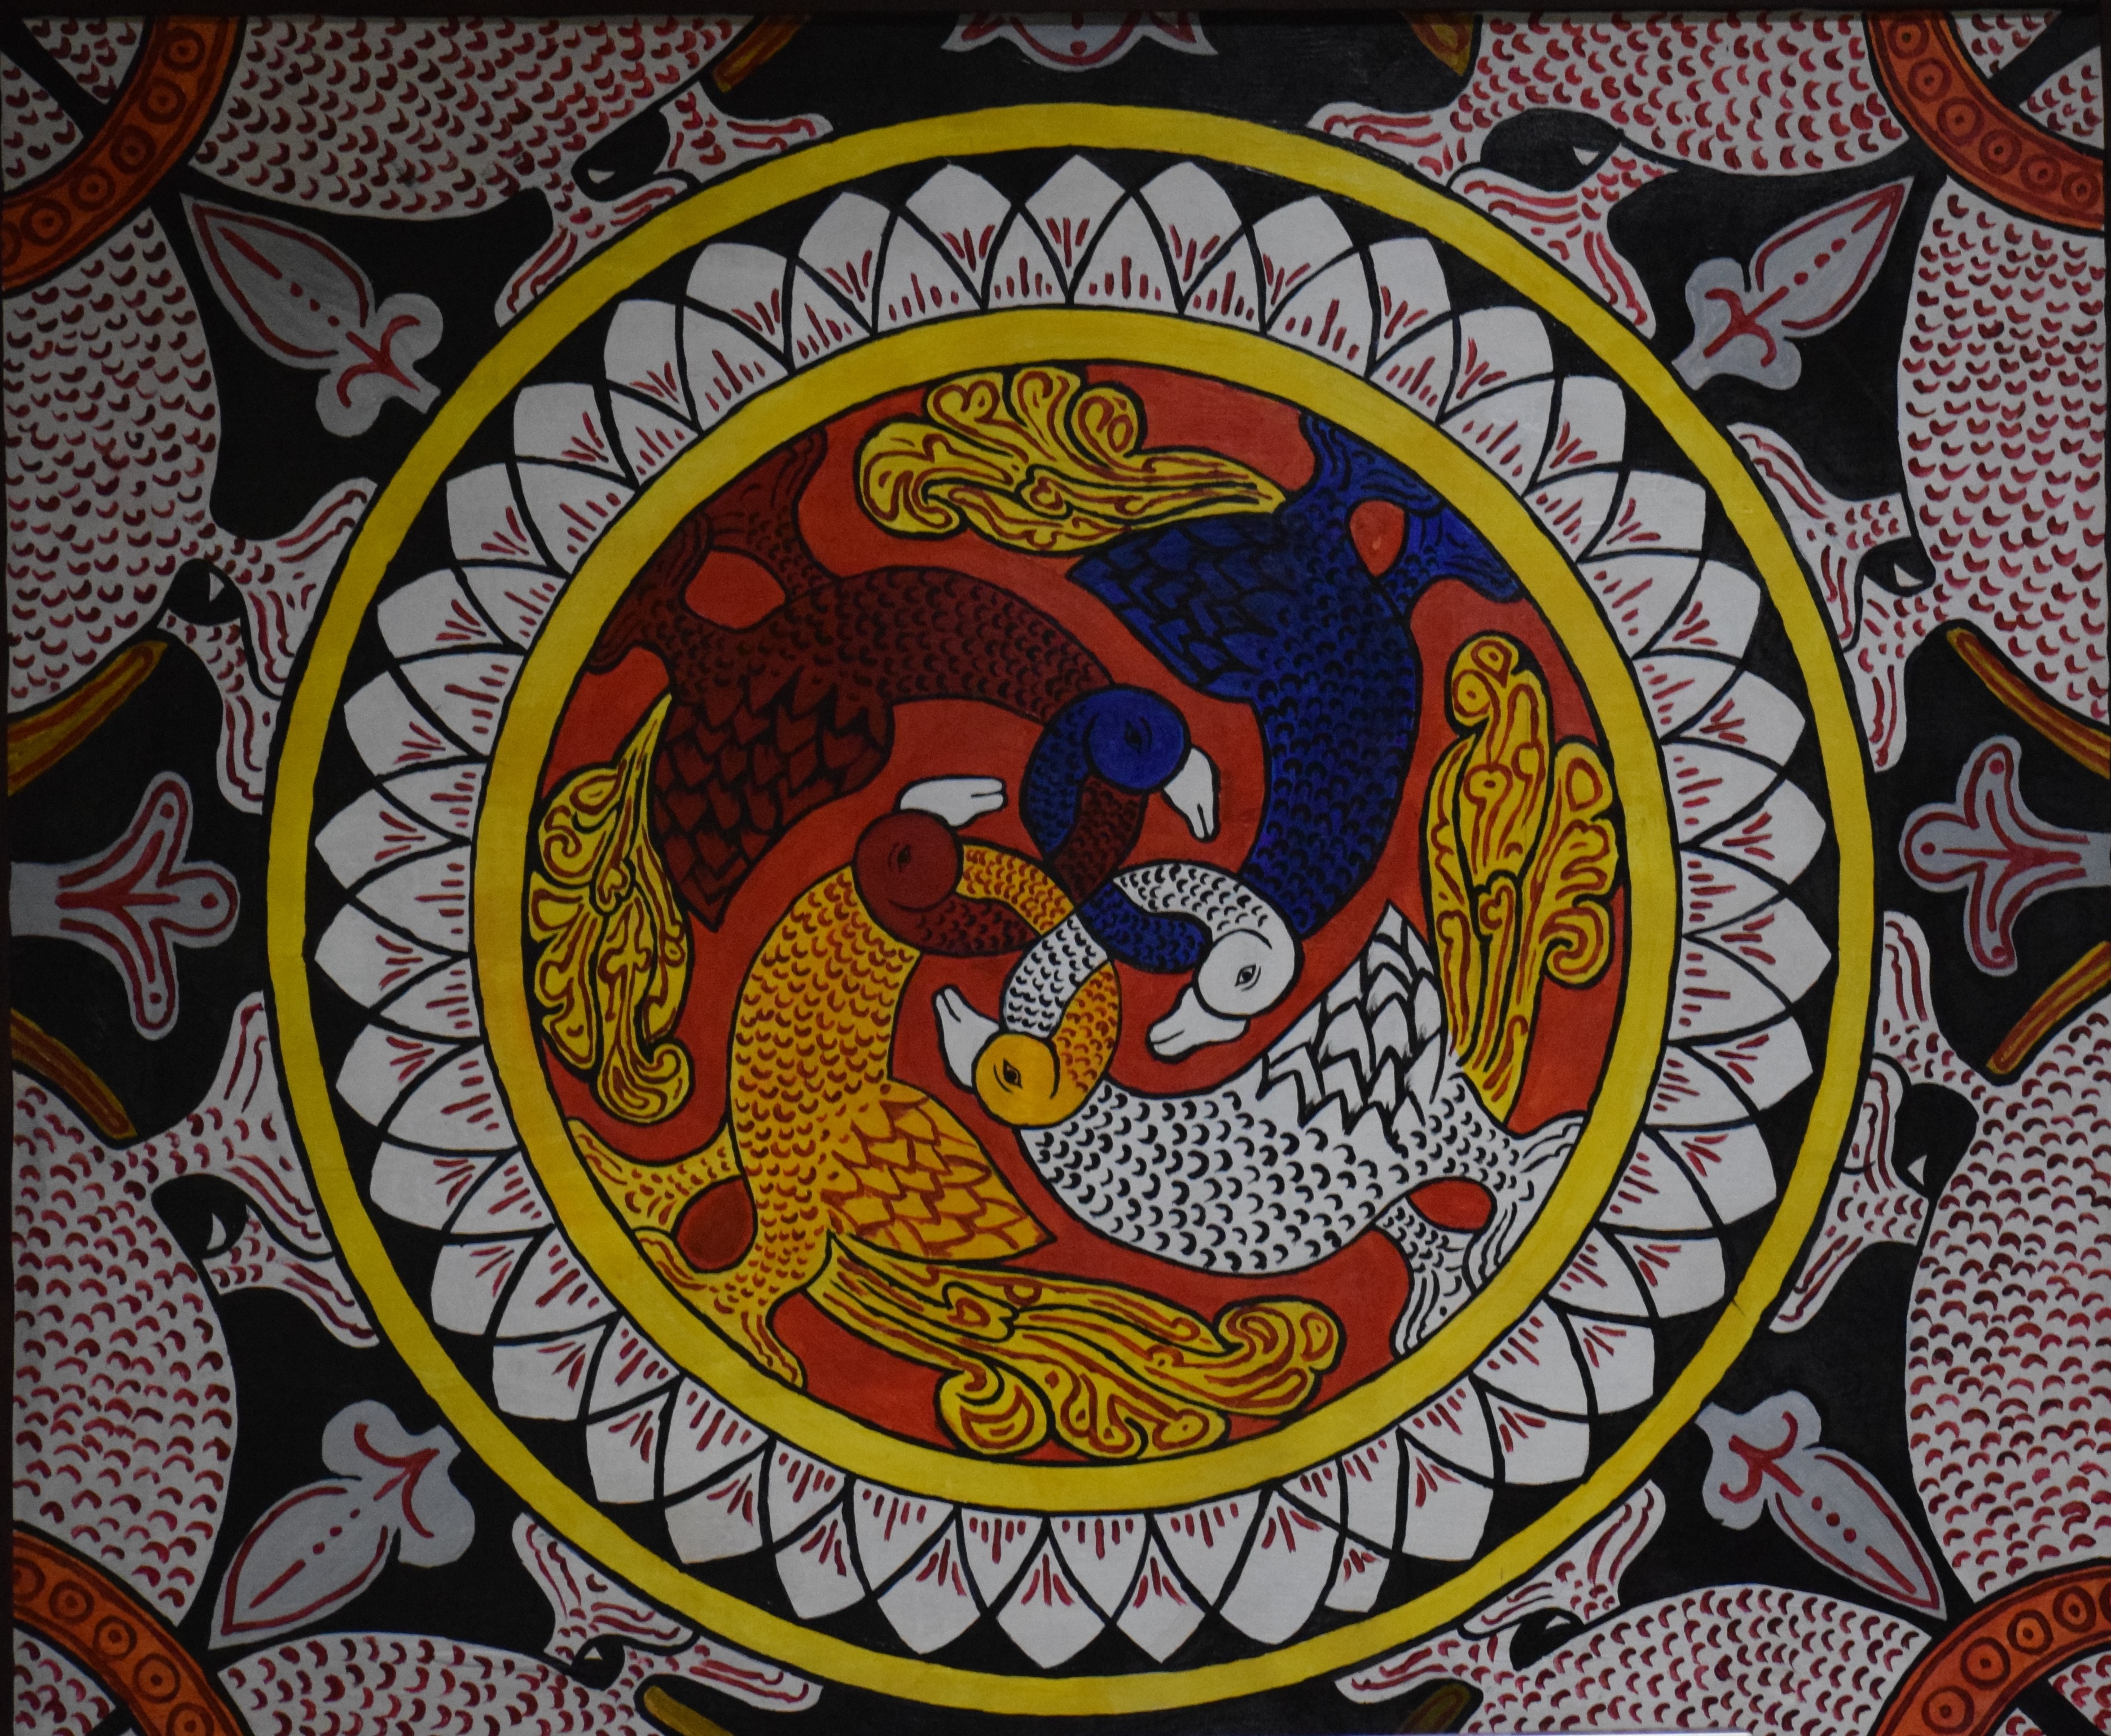 Painting at Sri Dalada Maligawa by Gayan Hemarathne